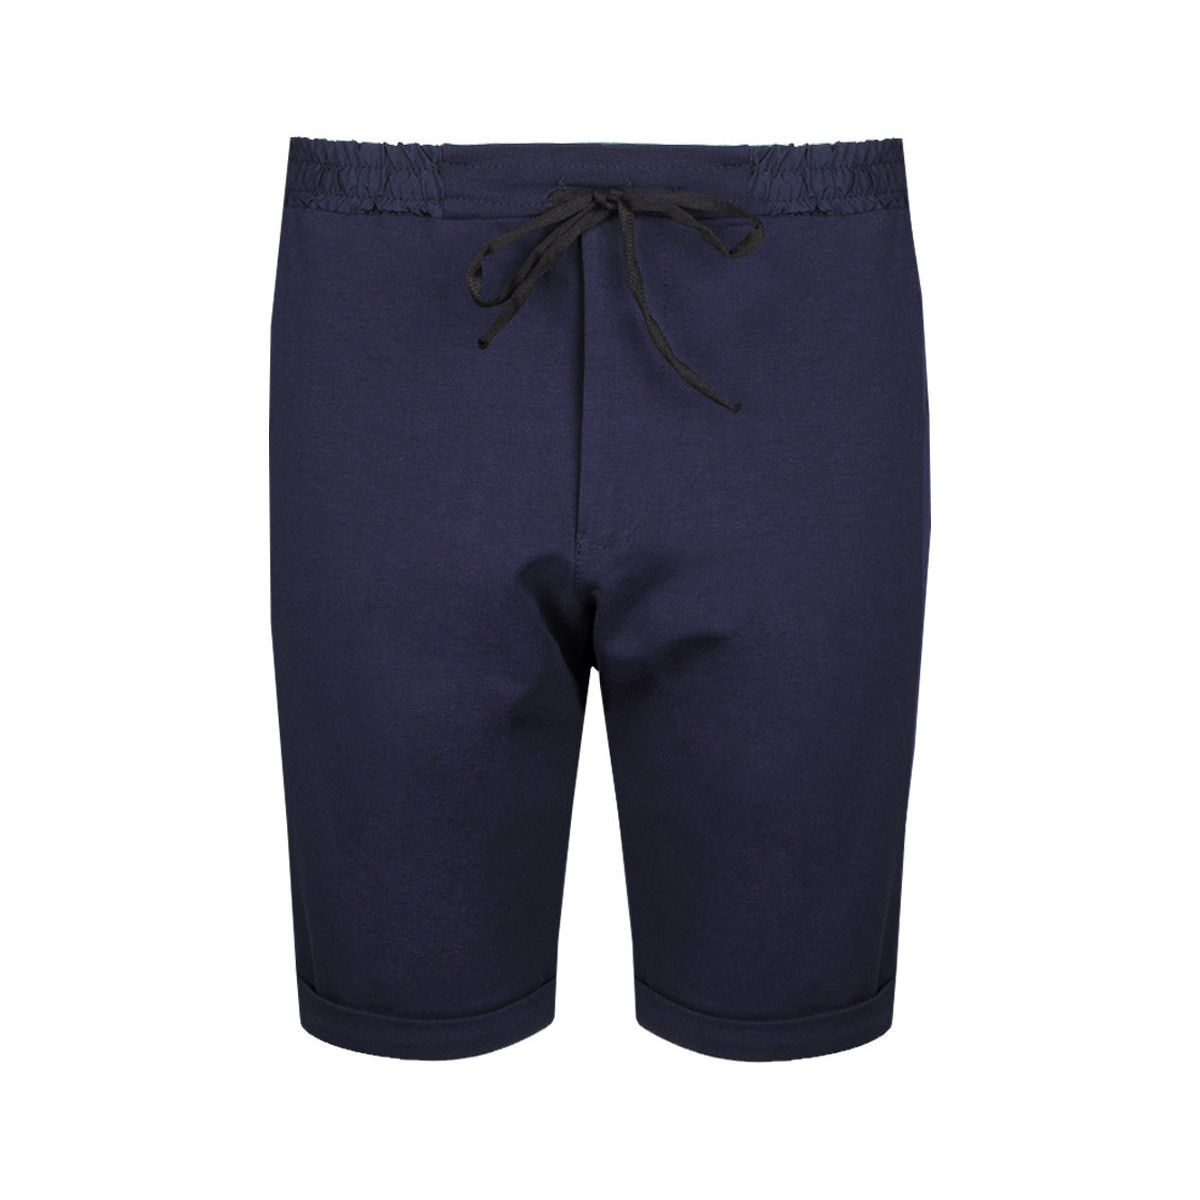 Odjeća Muškarci
 Bermude i kratke hlače Inni Producenci JBC001 03J0008 Plava